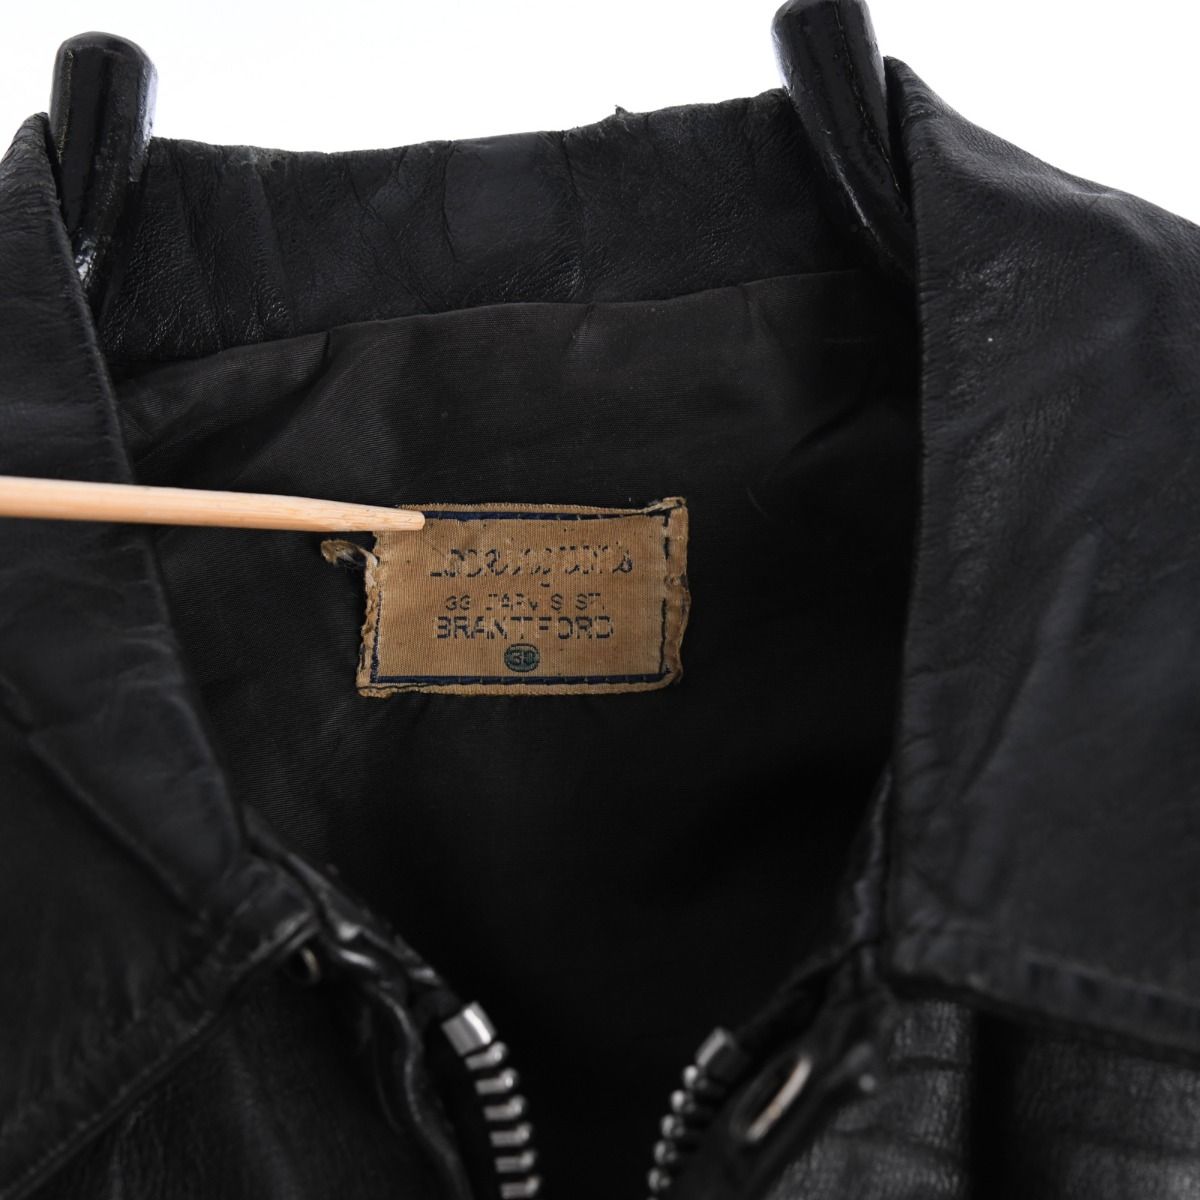 Vintage 1977 Leather Varsity Jacket